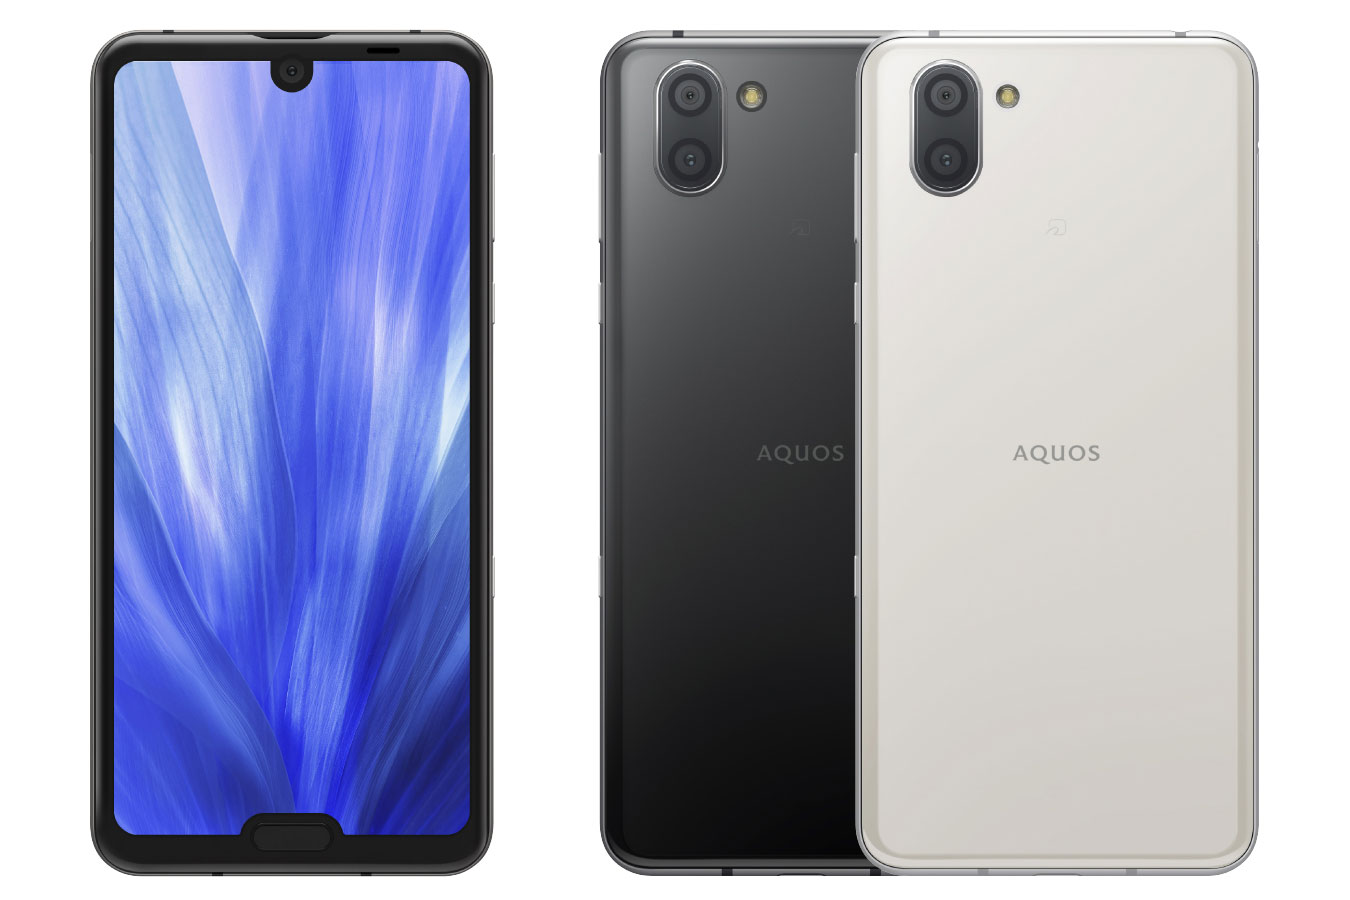 AQUOS R3 SIMフリー化済み Premium Black 2台セット